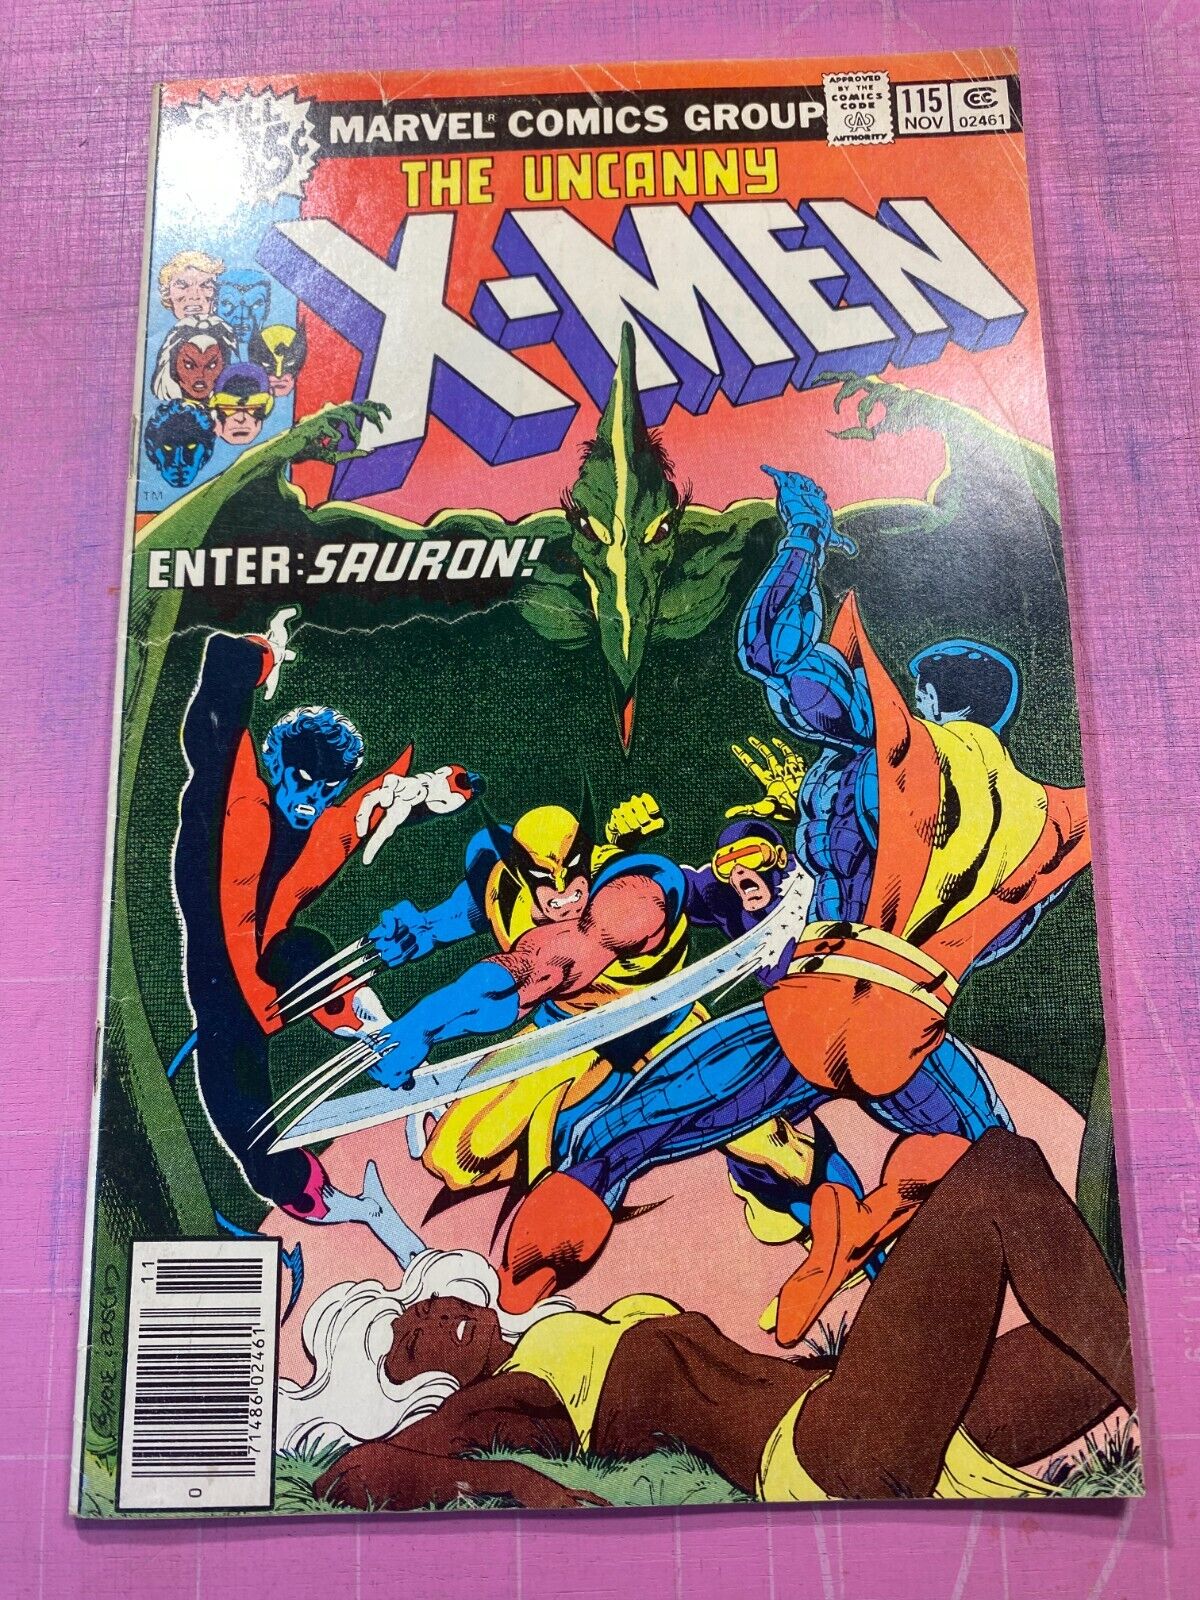 Uncanny X-Men # 115 (1978) GD Savage Land, Ka-zar Bronze Age X-Men